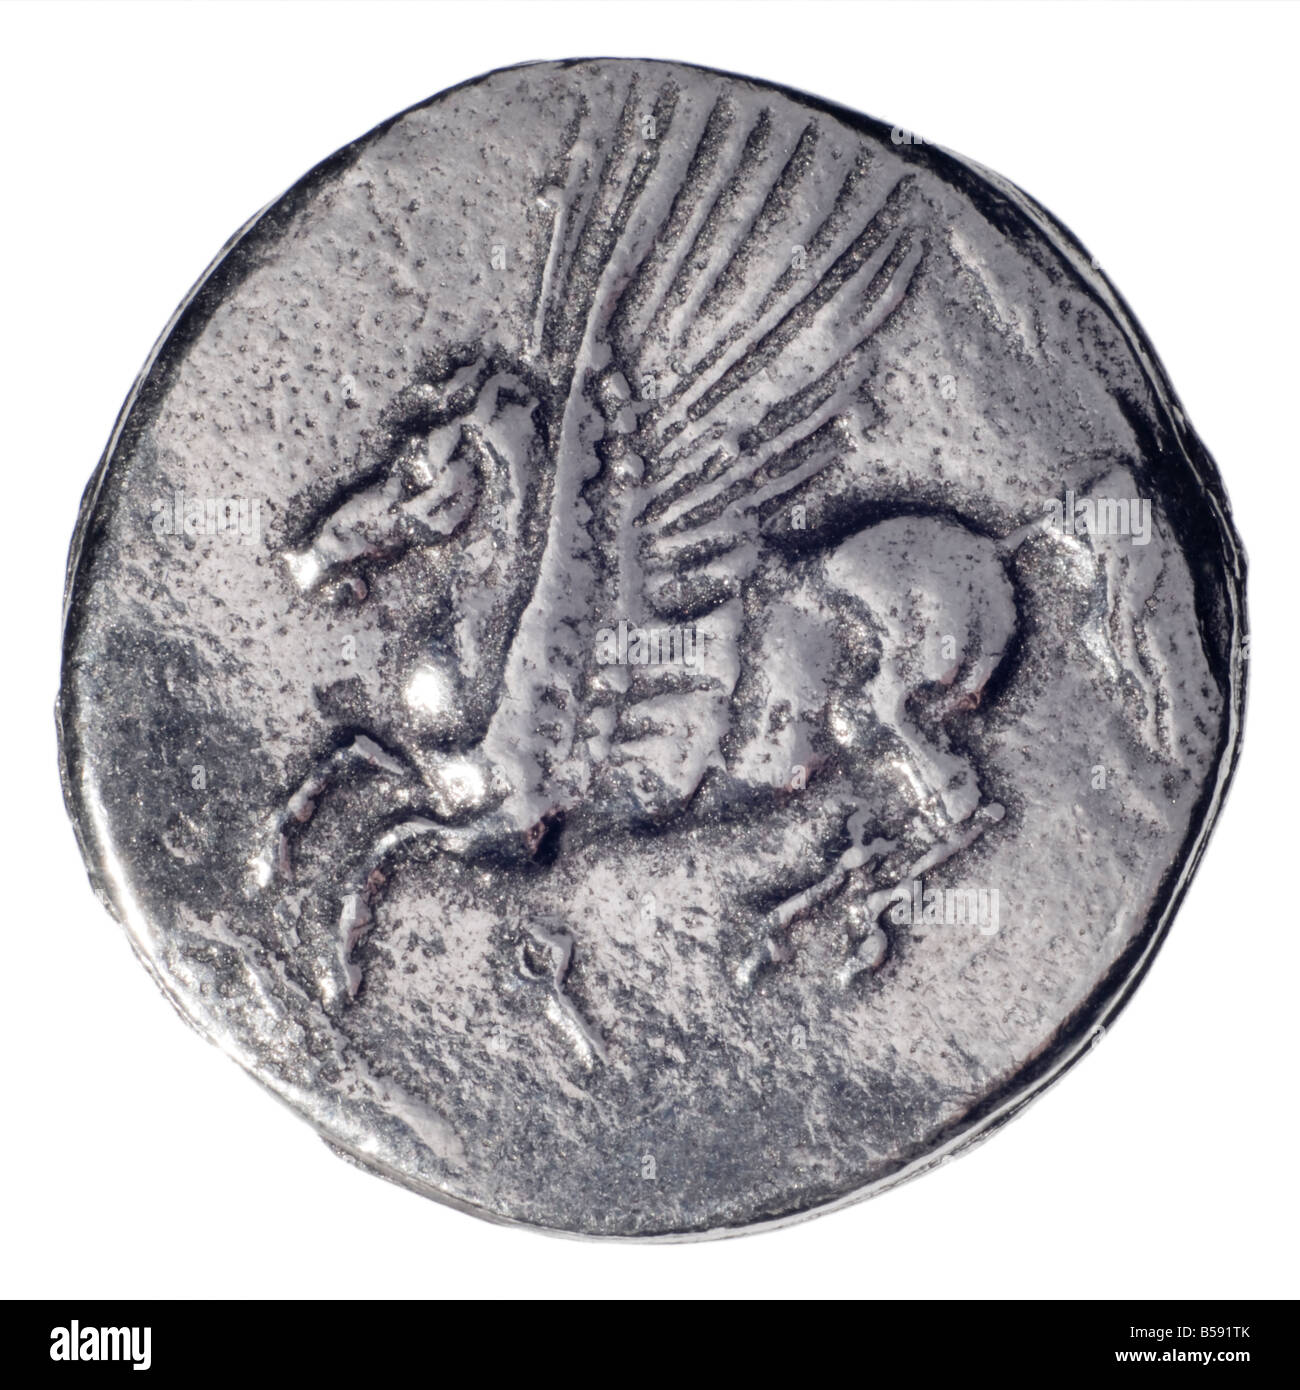 Pièce d'argent de la Grèce antique (réplique) Argent Didrachm de Corinthe, 4thC BC. (Avers : Athena) inverse : le cheval ailé Pégase Banque D'Images